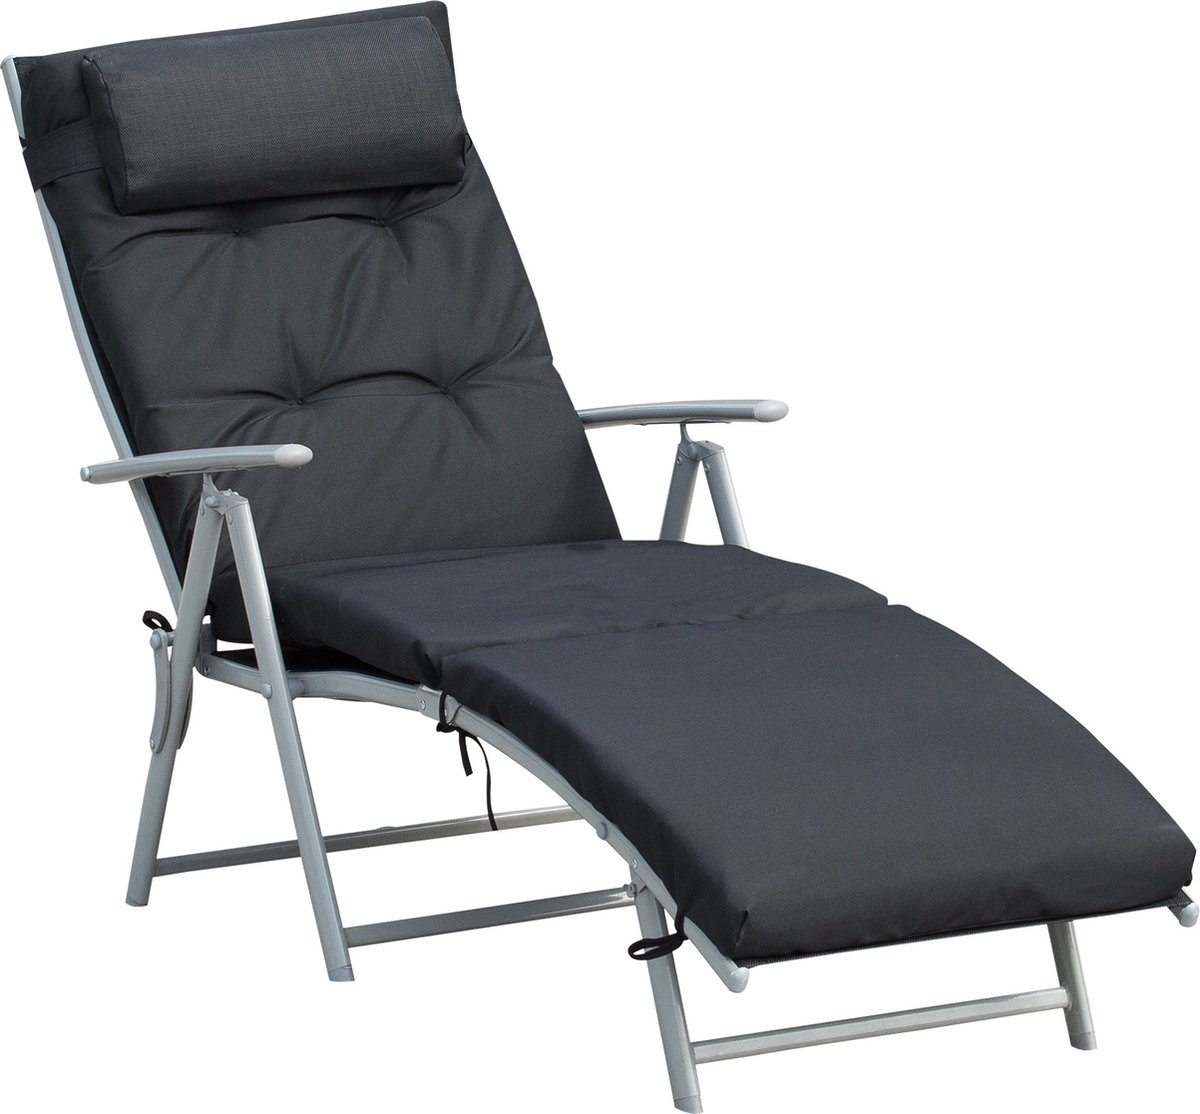 Outsunny Ligbank strandstoel ligbank verstelbaar 7-traps verstelbaar inklapbaar metaal 84B-184V01